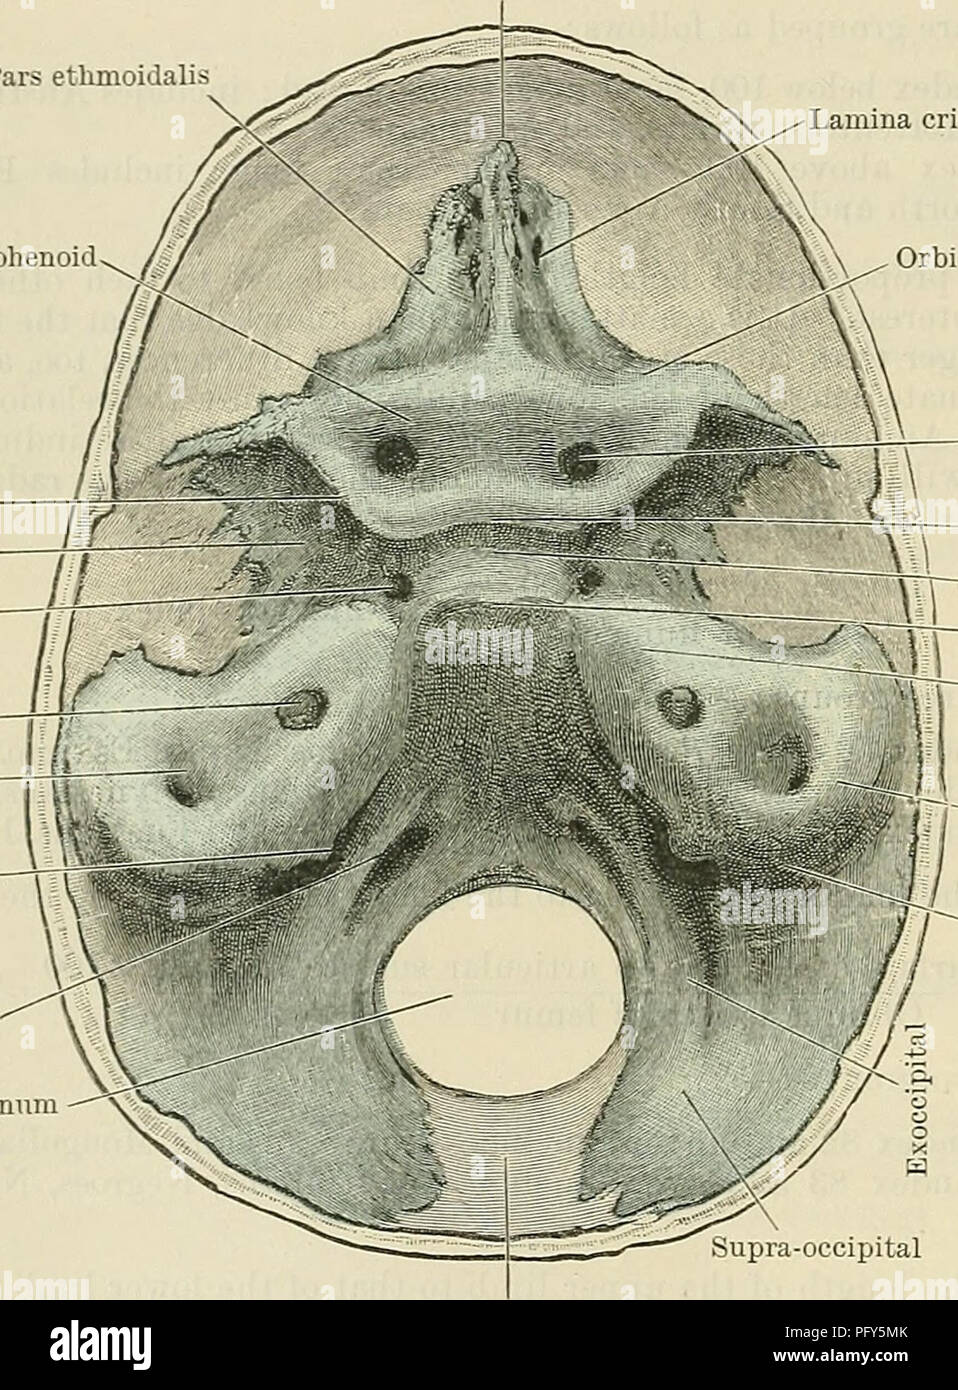 . Cunninghams Lehrbuch der Anatomie. Anatomie. 290 OSTEOLOGIE. Anhang E. ENTWICKLUNG DER CHONDRO-Schädel und Morphologie der Schädel. Wie bereits erwähnt, ist die Chorda dorsalis oder Chorda dorsalis erstreckt sich vorwärts zu einem Punkt direkt unter dem vorderen Ende der Mitte - Gehirn. Vor diesem den Kopf nimmt eine Biegung, so dass die großen fore-brain Überschneidungen der vorderen Extremitäten der Chorda dorsalis. In diesem Stadium der Entwicklung der zerebralen Vesikel werden in einem membranöse Bezug aus dem Mesen abgeleitet eingeschlossen - Crista Galli Pars ethmoidals Lamina cribrosa Orbito - Sphenoid Superior orbital Spalte 77 Stockfoto